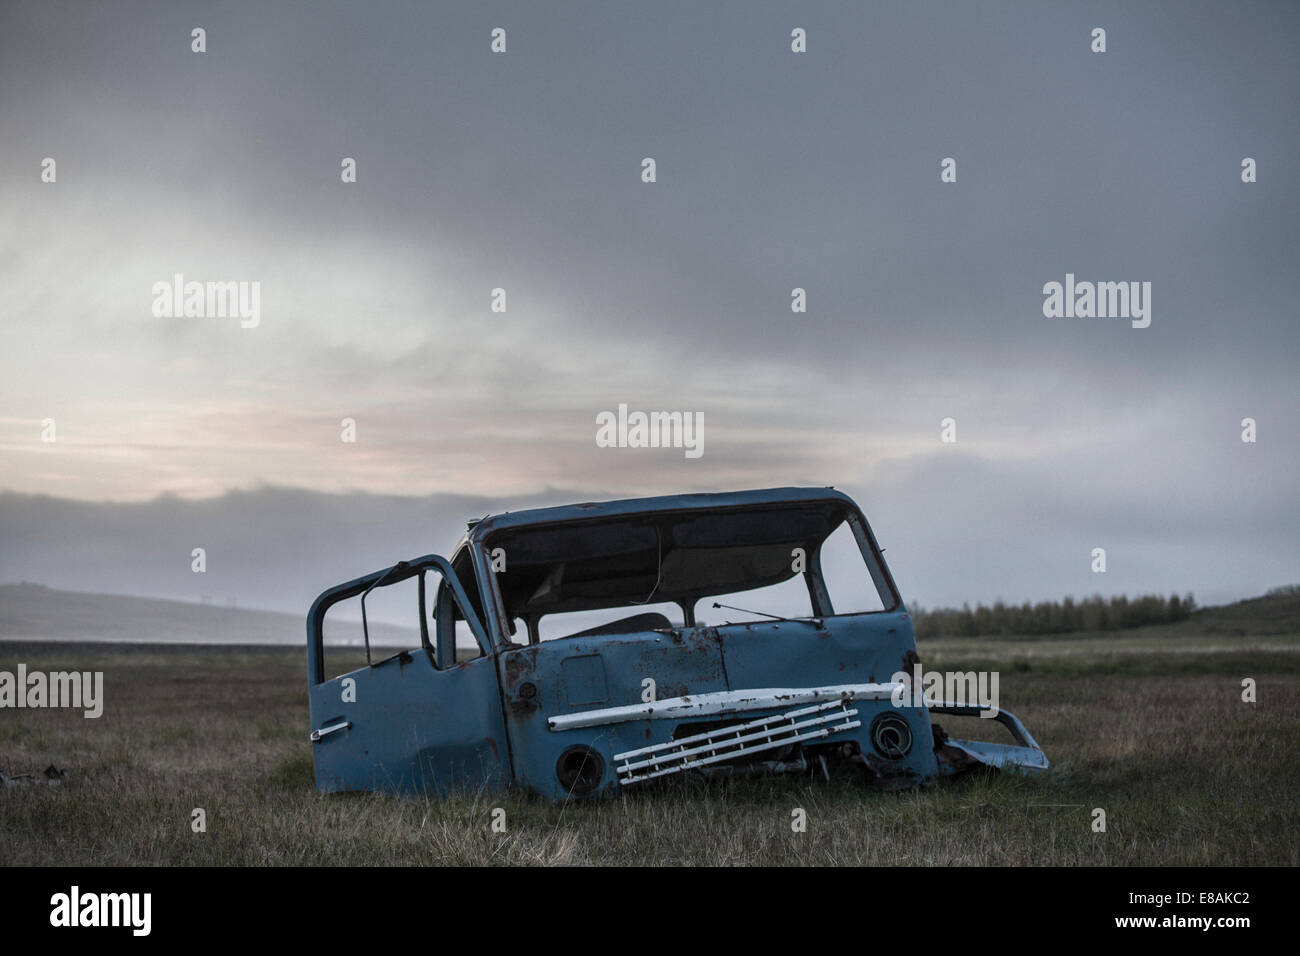 Abandoned vehicle, Egilsstadir, Iceland Stock Photo